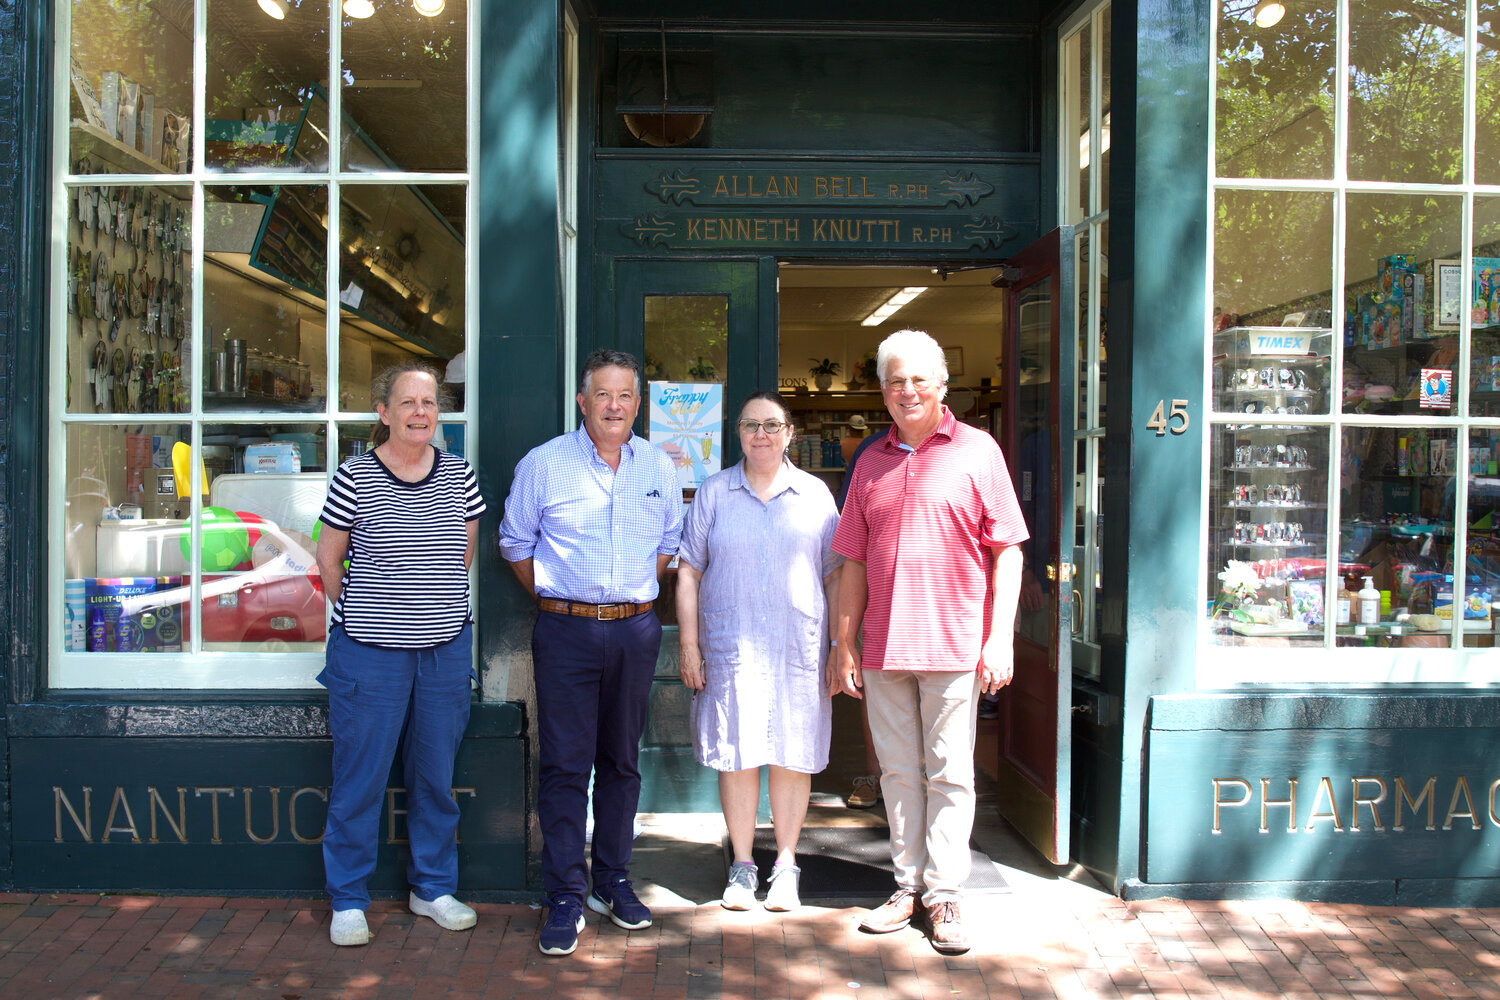 From left, Joanne Skokan, Ken Knutti, Jill Audycki and Allan Bell outside Nantucket Pharmacy on Main Street Tuesday.